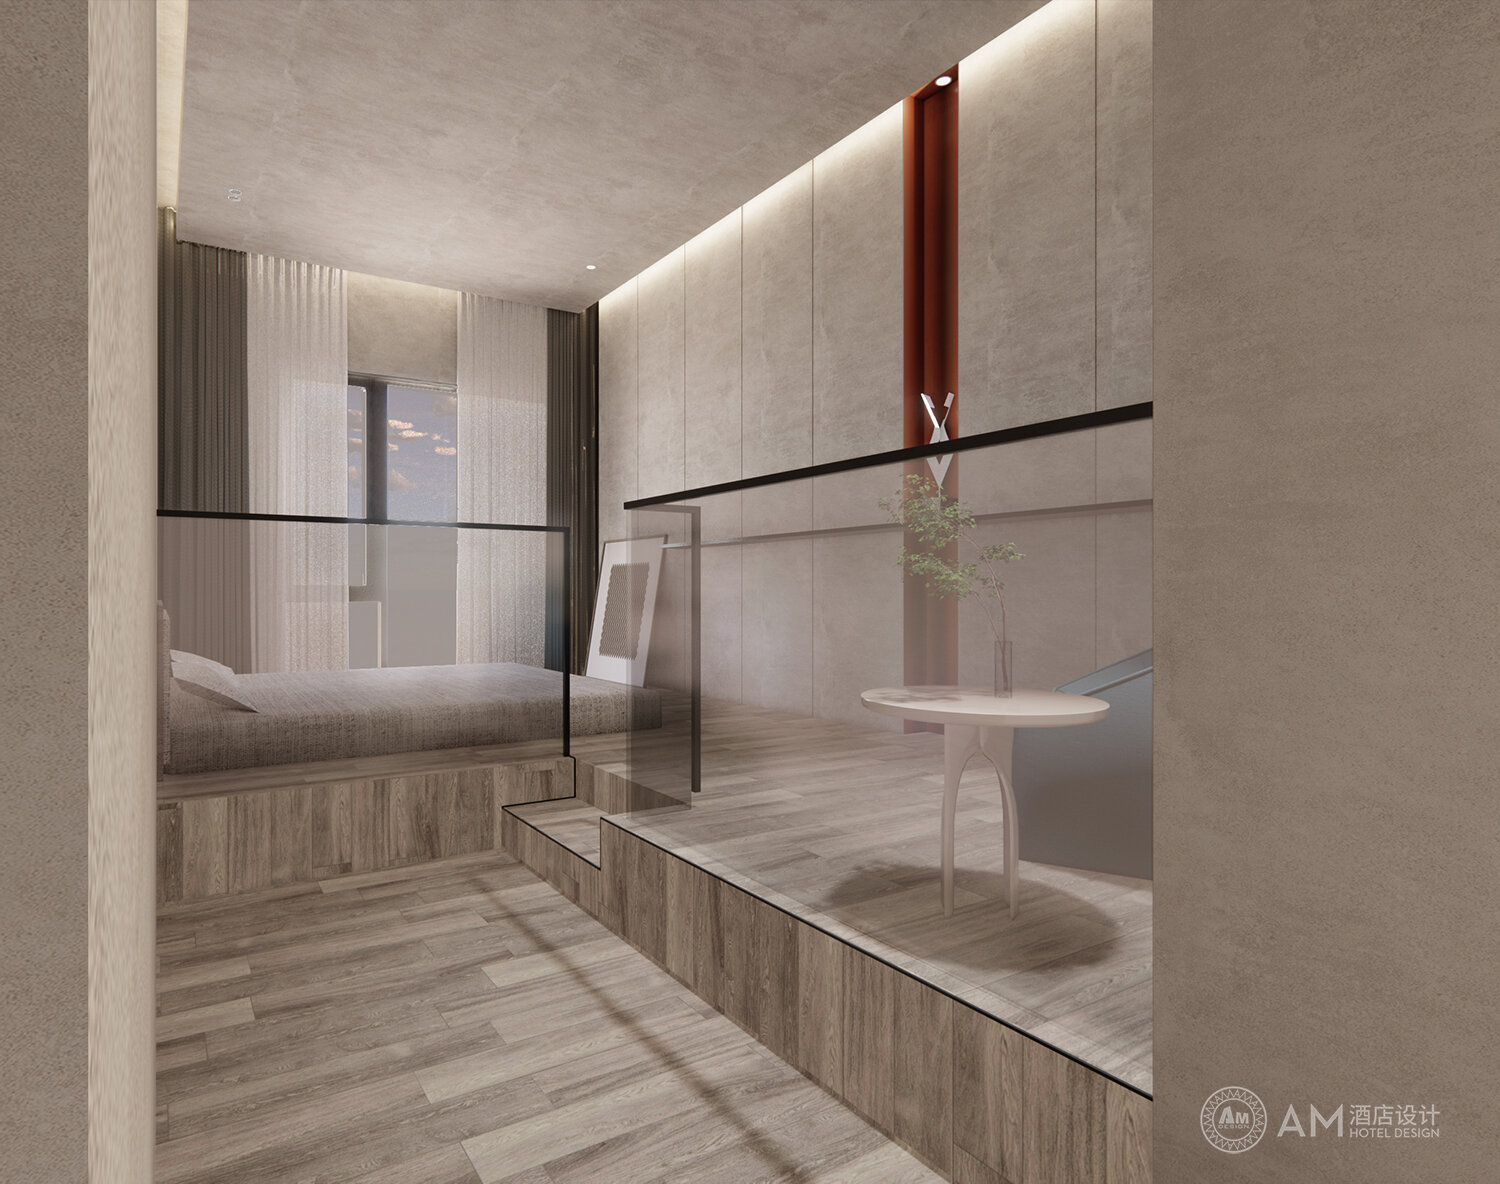 AM DESIGN | Guest room design of Qianhouyuan B&B in Jizhou District, Tianjin